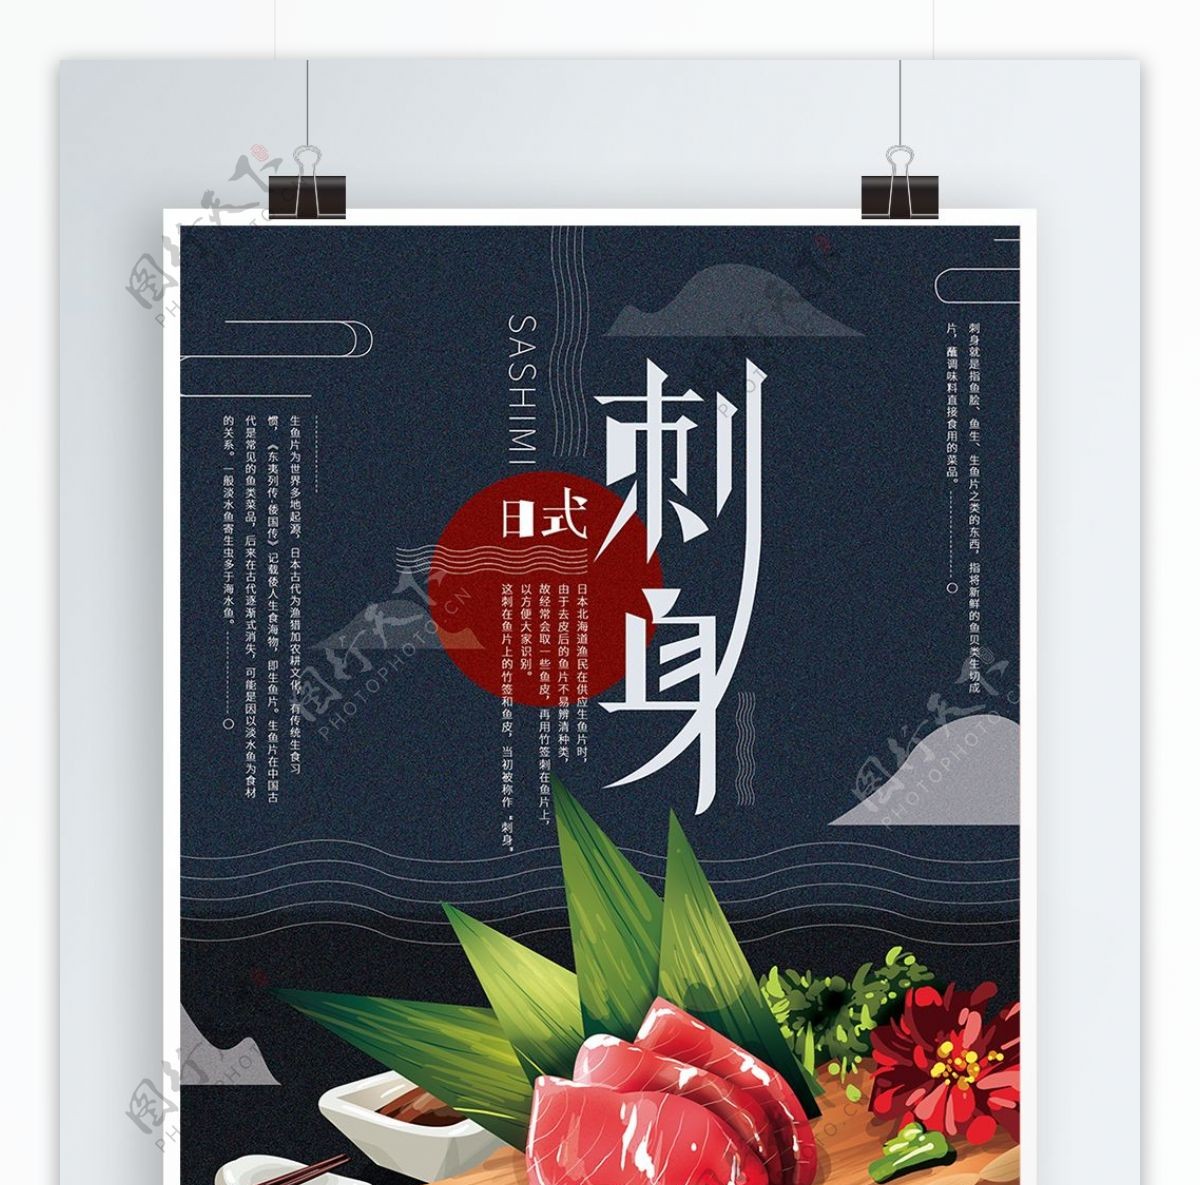 原创手绘简约日式美食刺身海报